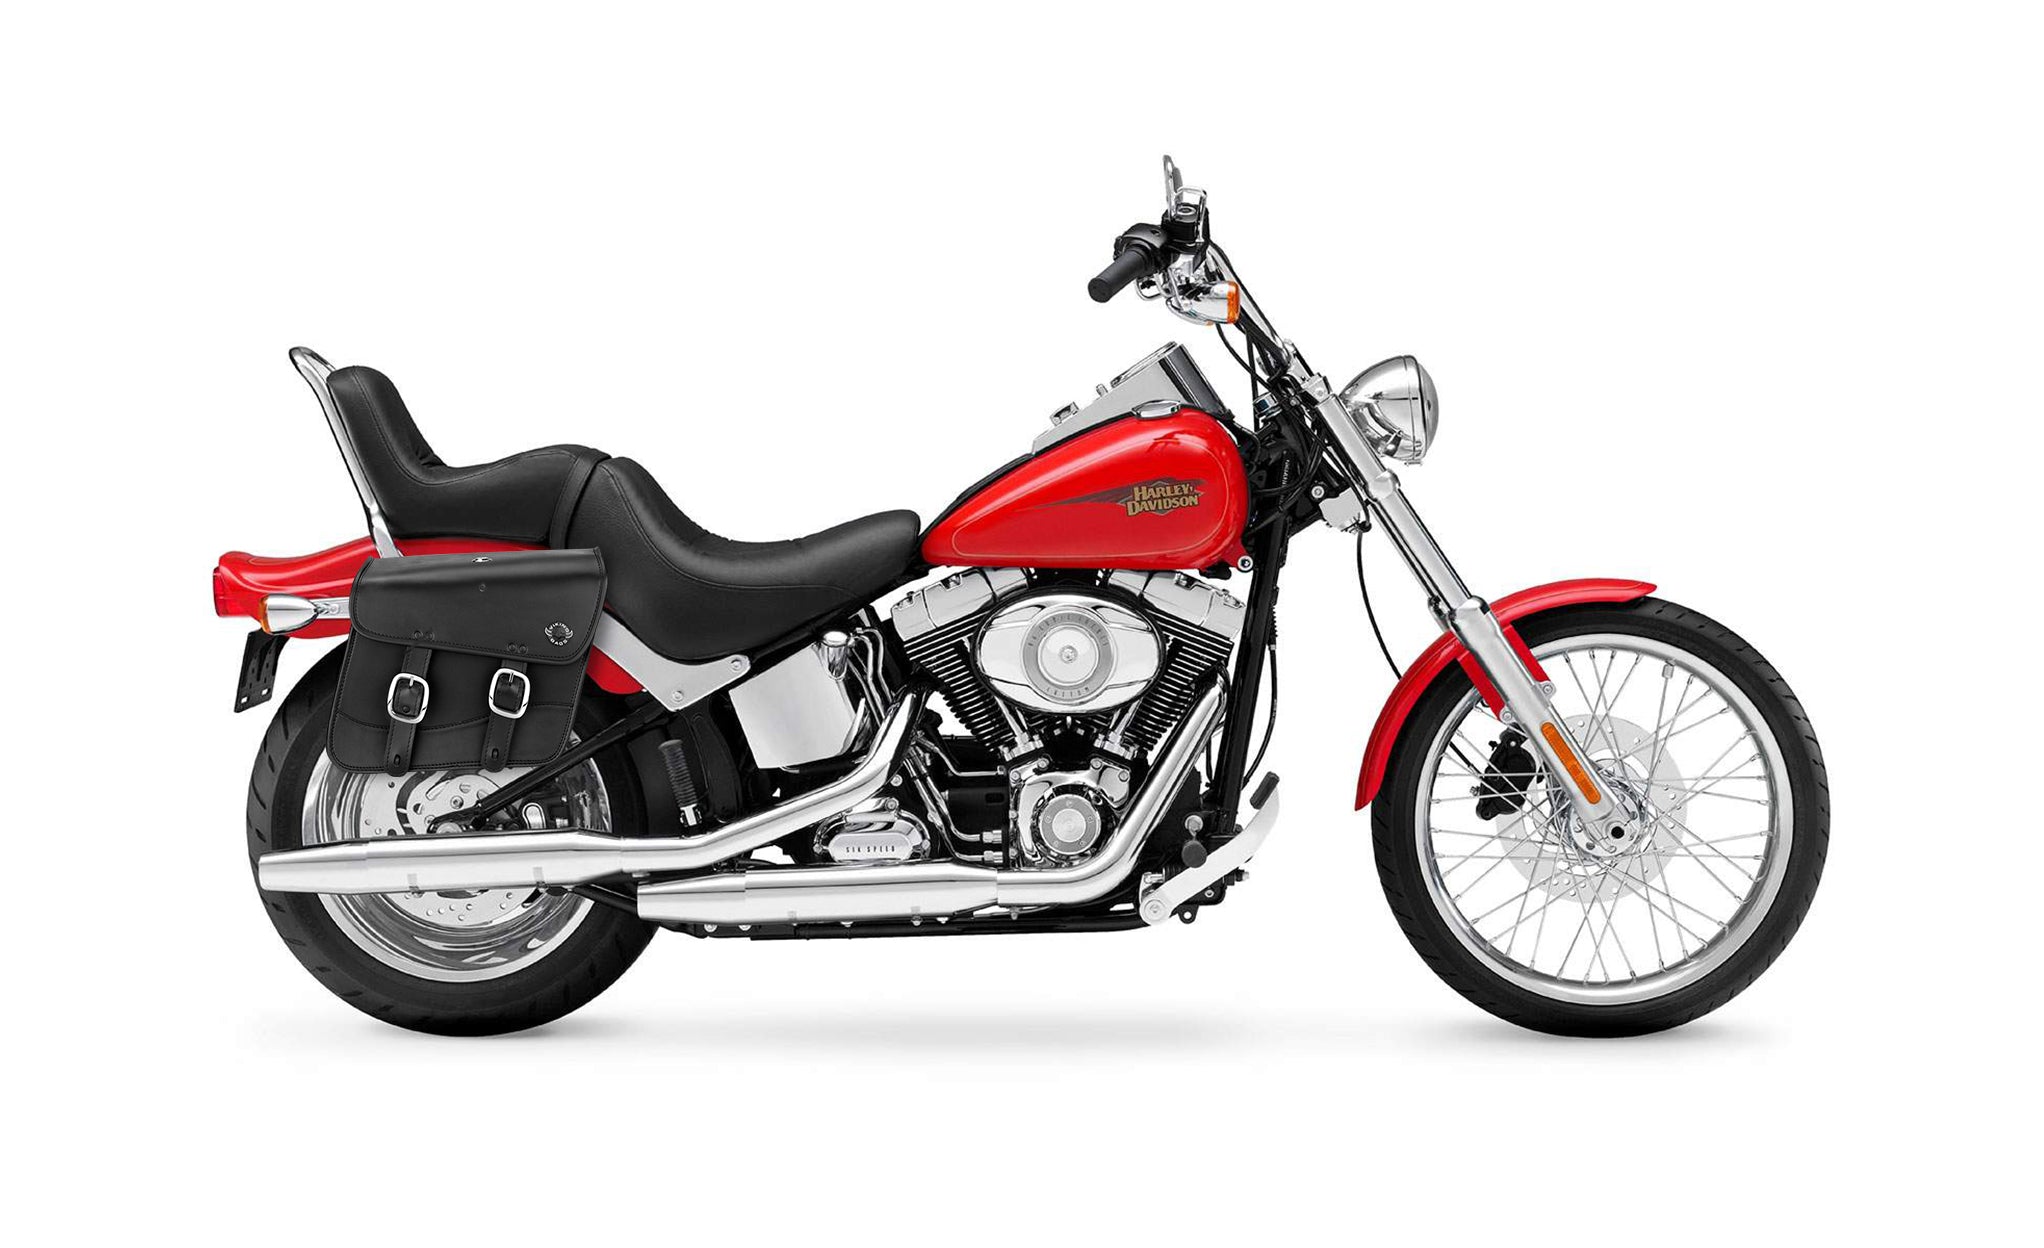 Viking Thor Medium Leather Motorcycle Saddlebags For Harley Davidson Softail Custom Fxstc on Bike Photo @expand